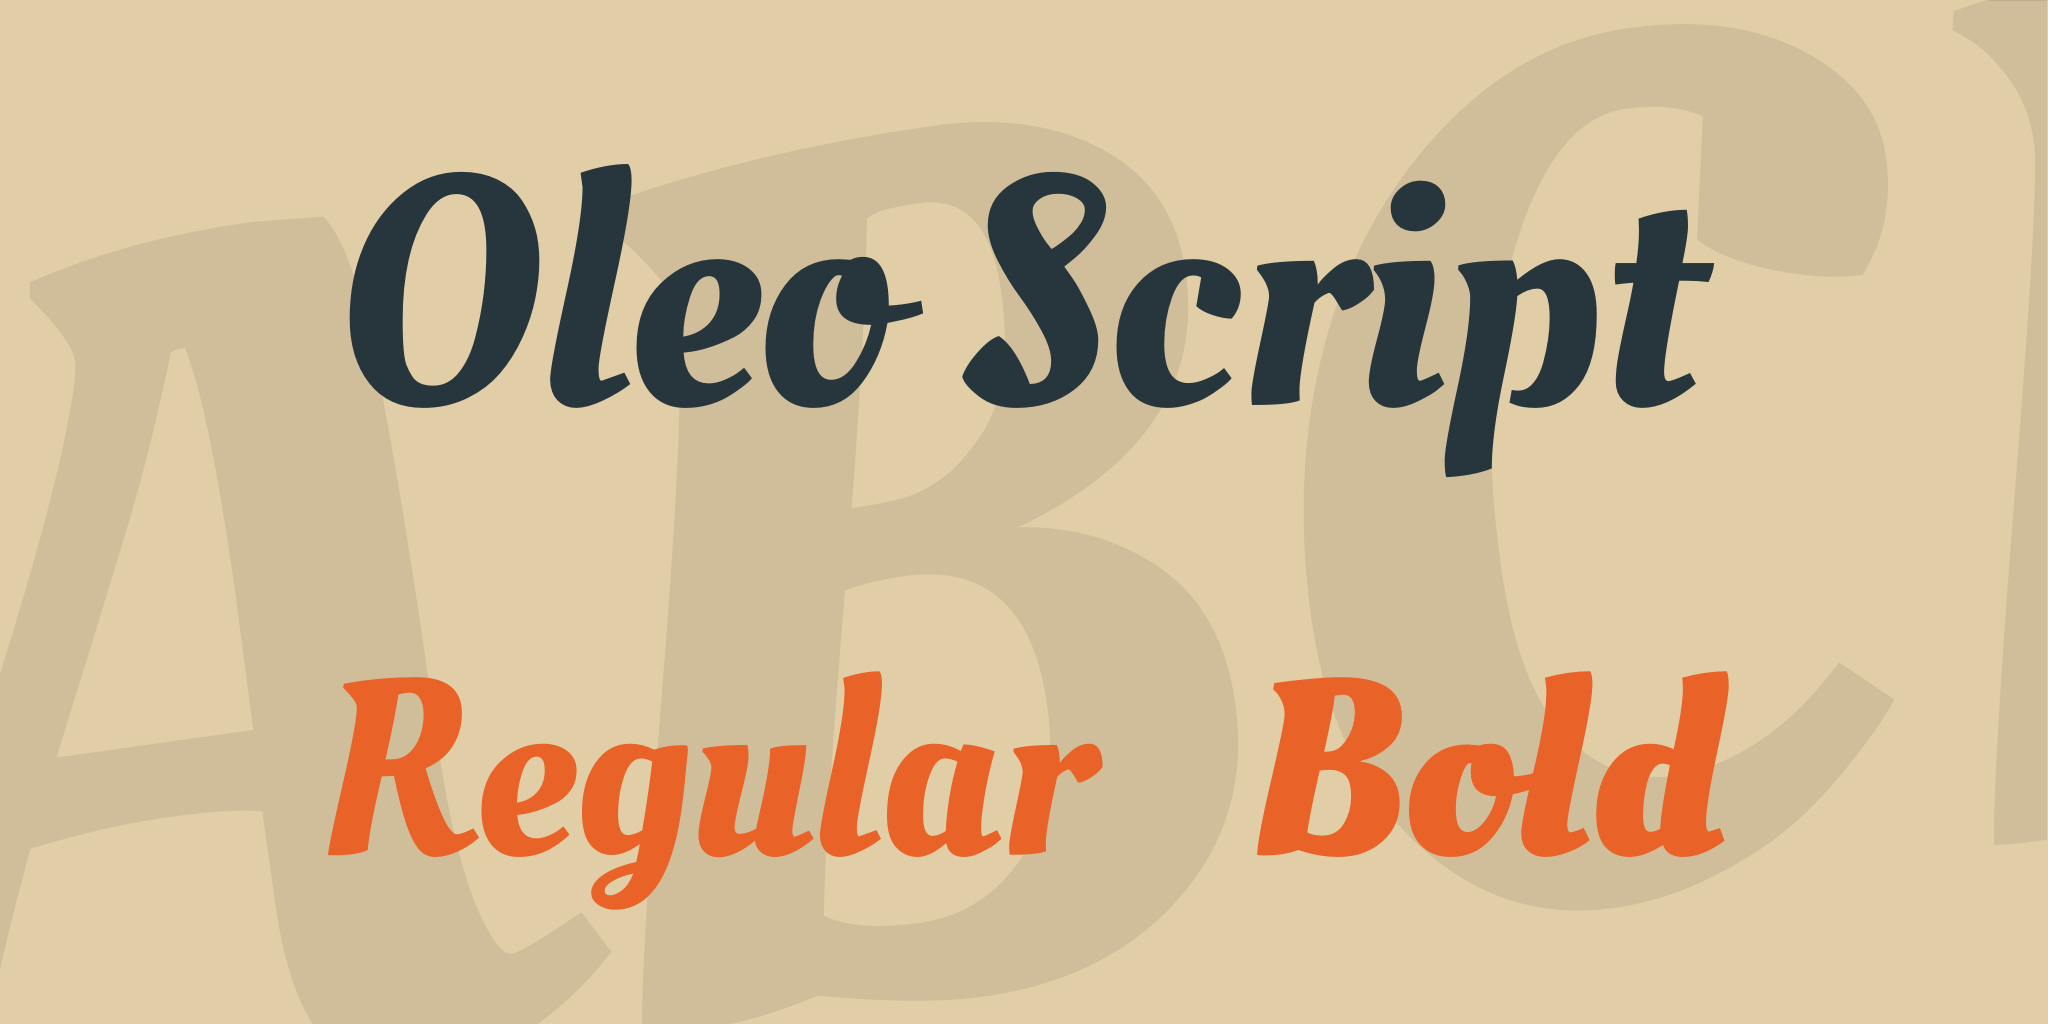 Oleo Script